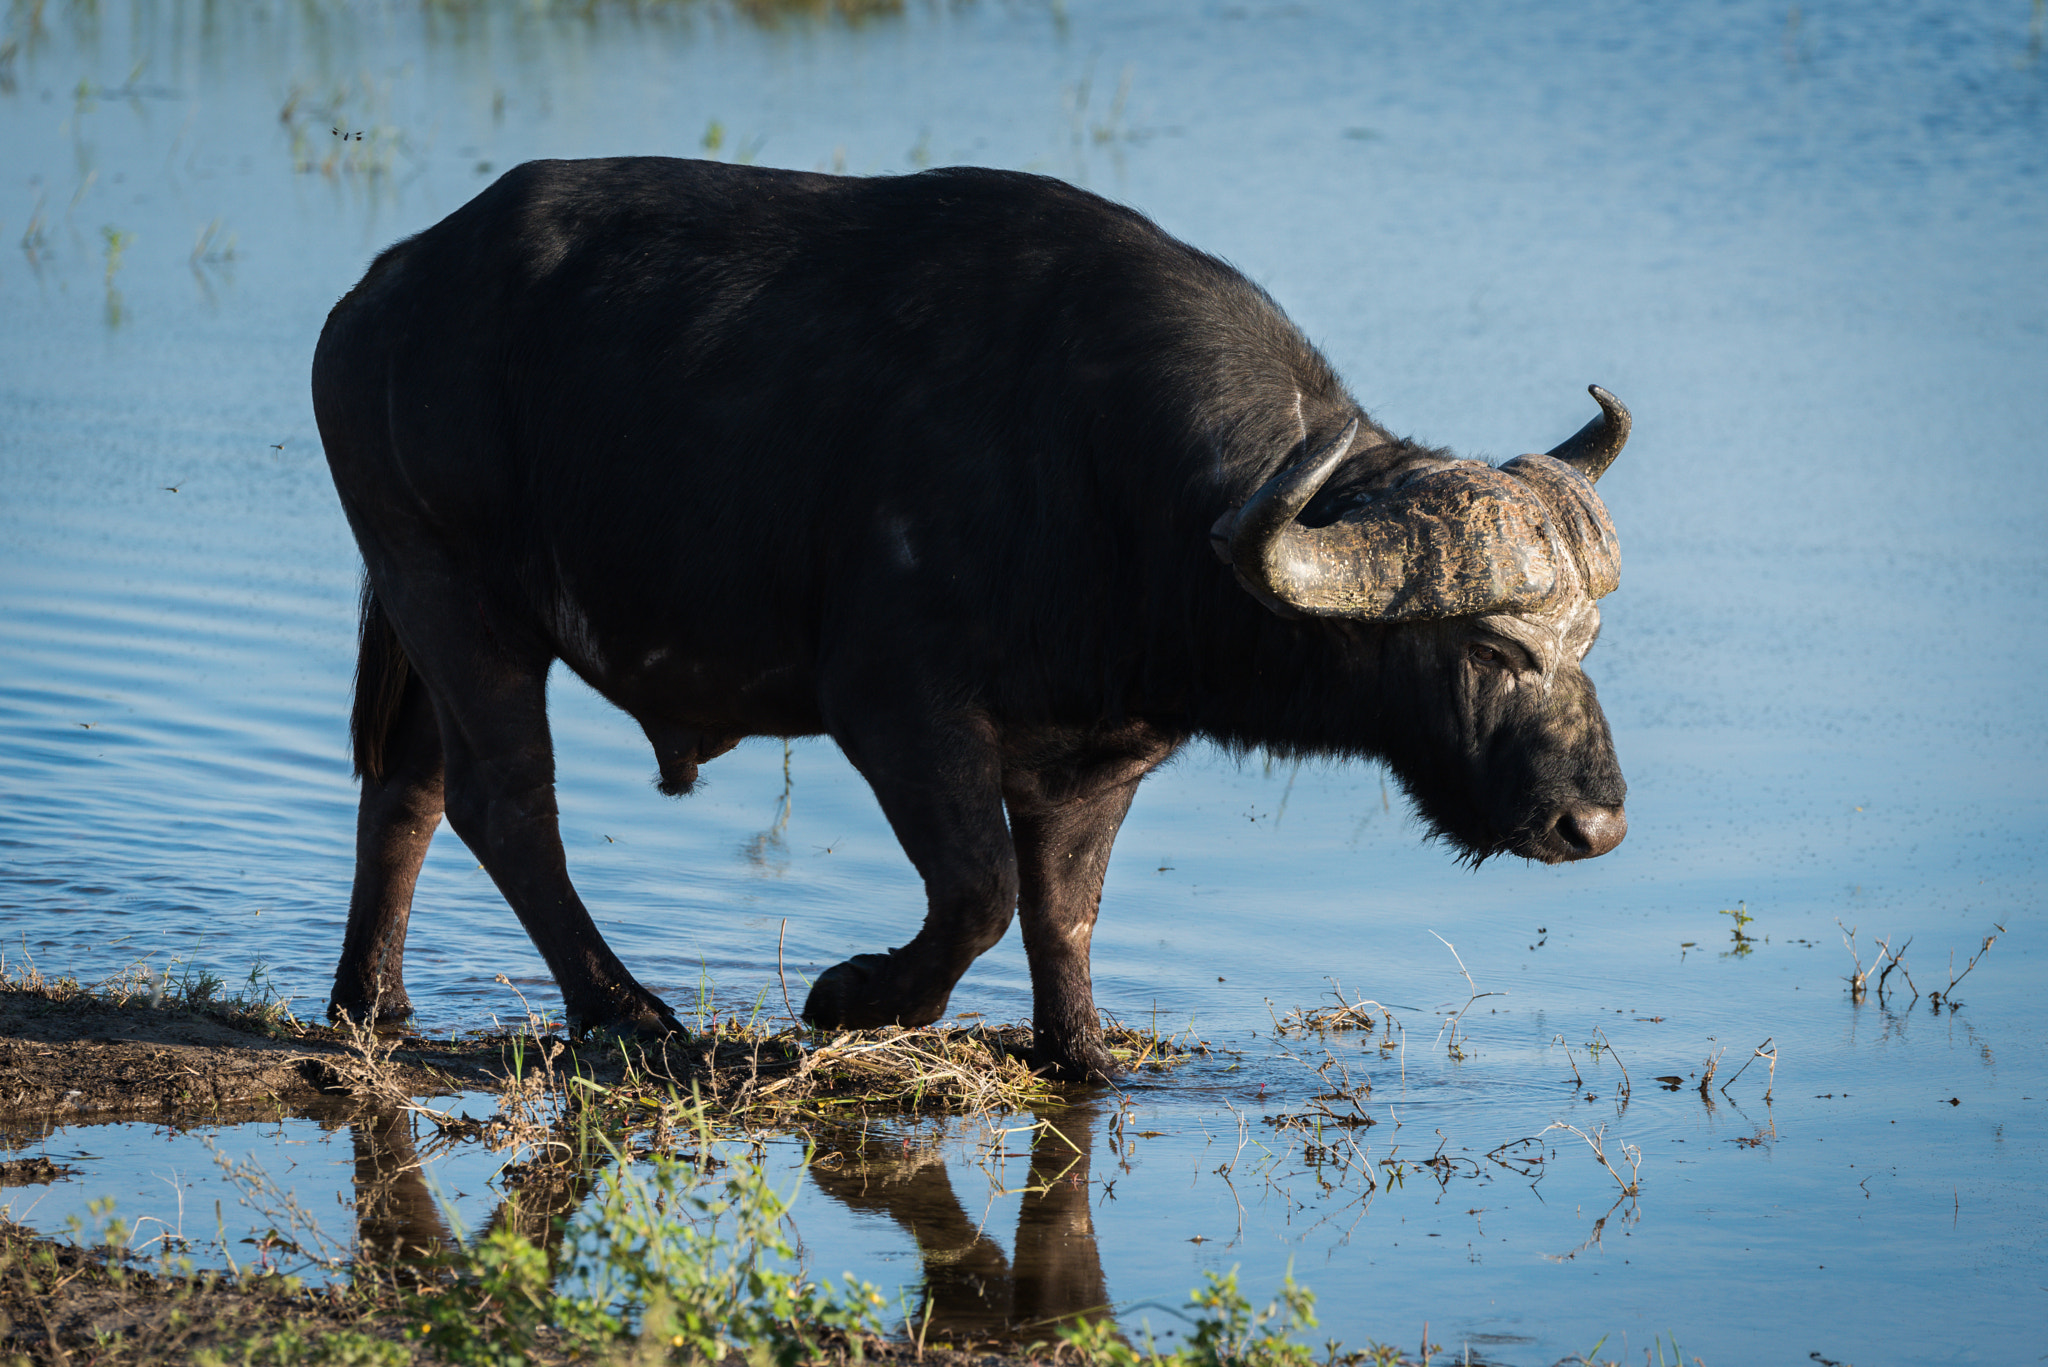 Nikon D810 sample photo. Cape buffalo walking through shallows in sunshine photography